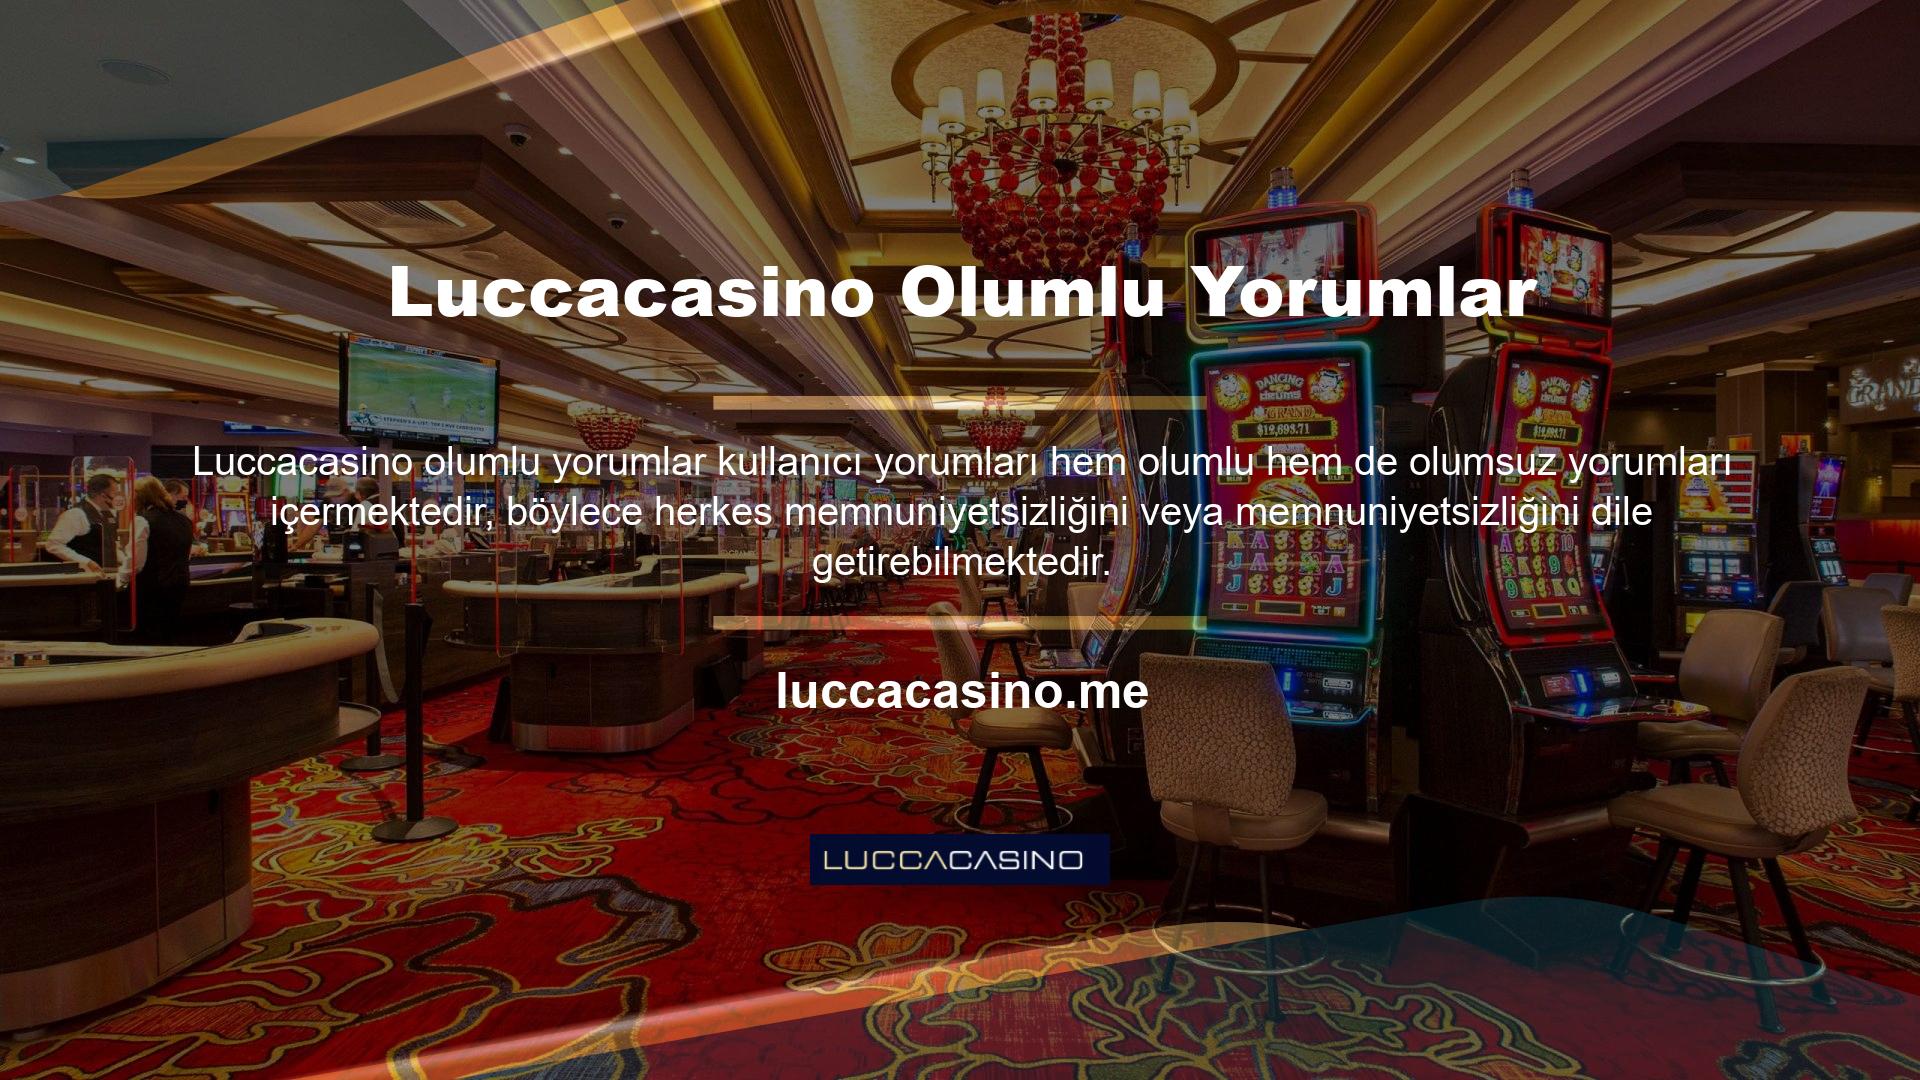 Kullanıcılar Luccacasino Yeni Adresi bahisleri hakkında bahis siteleri ve forumlar aracılığıyla detaylı şikâyetlerini bildirmektedir